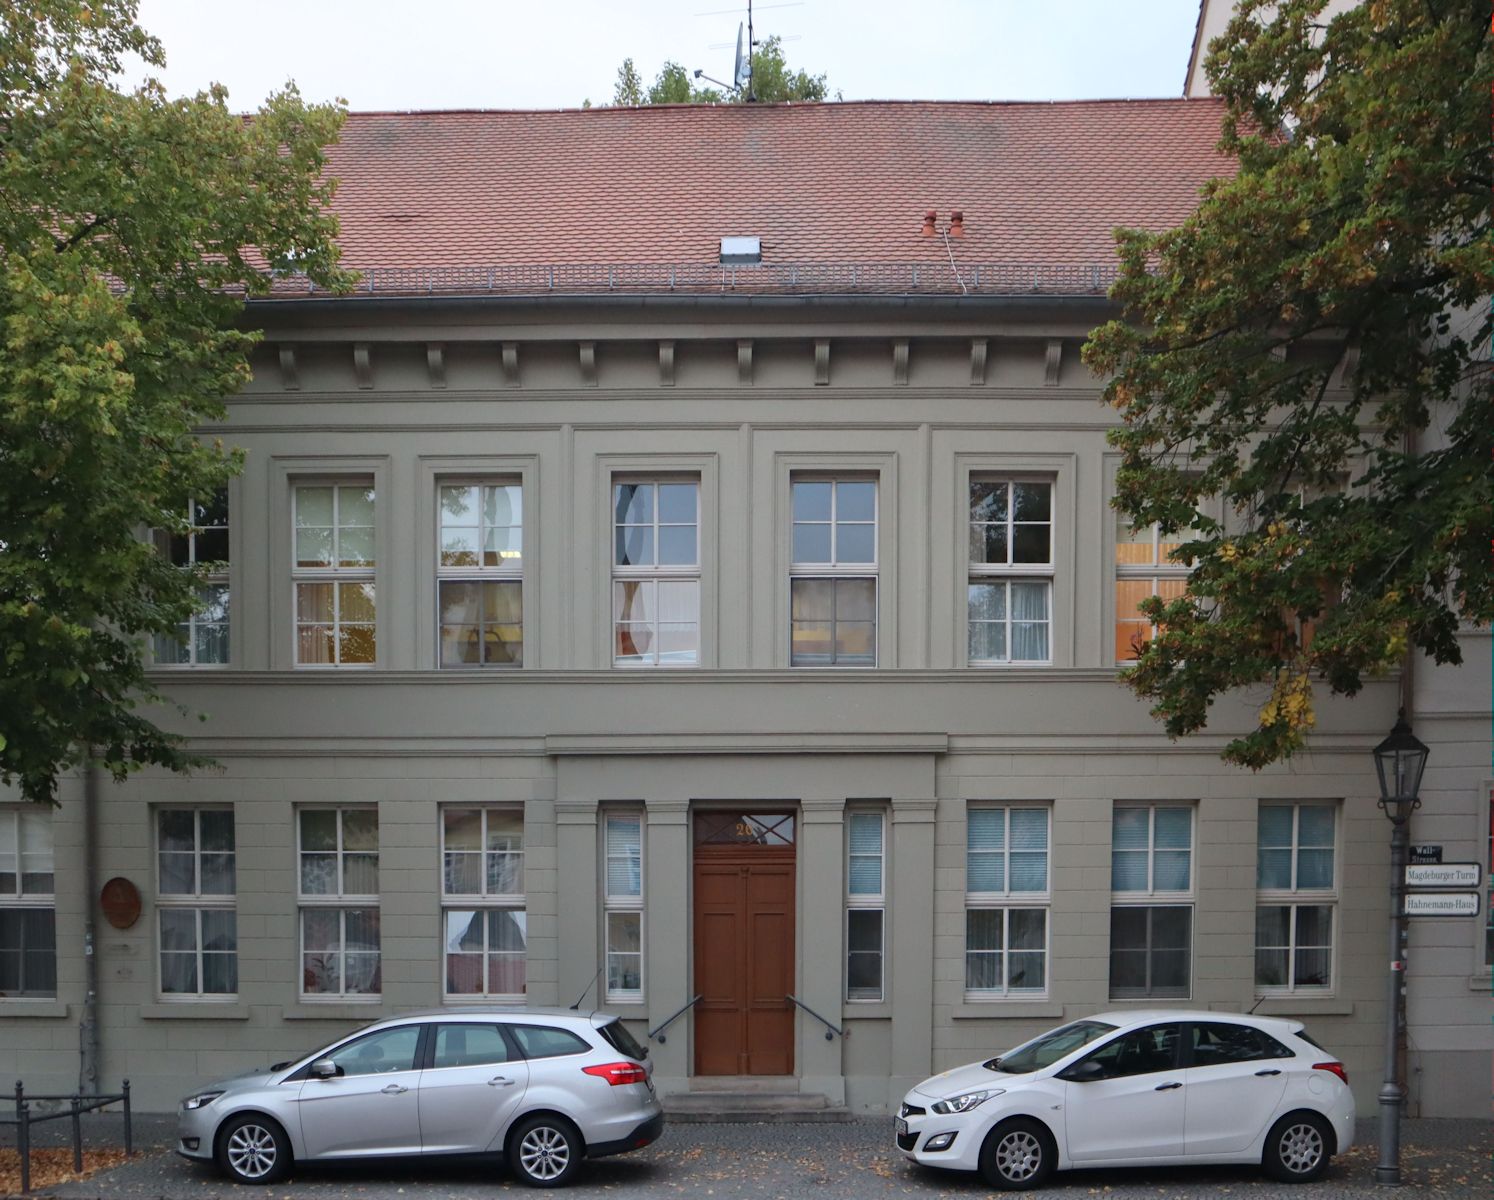 Bachs Wohnhaus in Köthen 1719 bis 1723